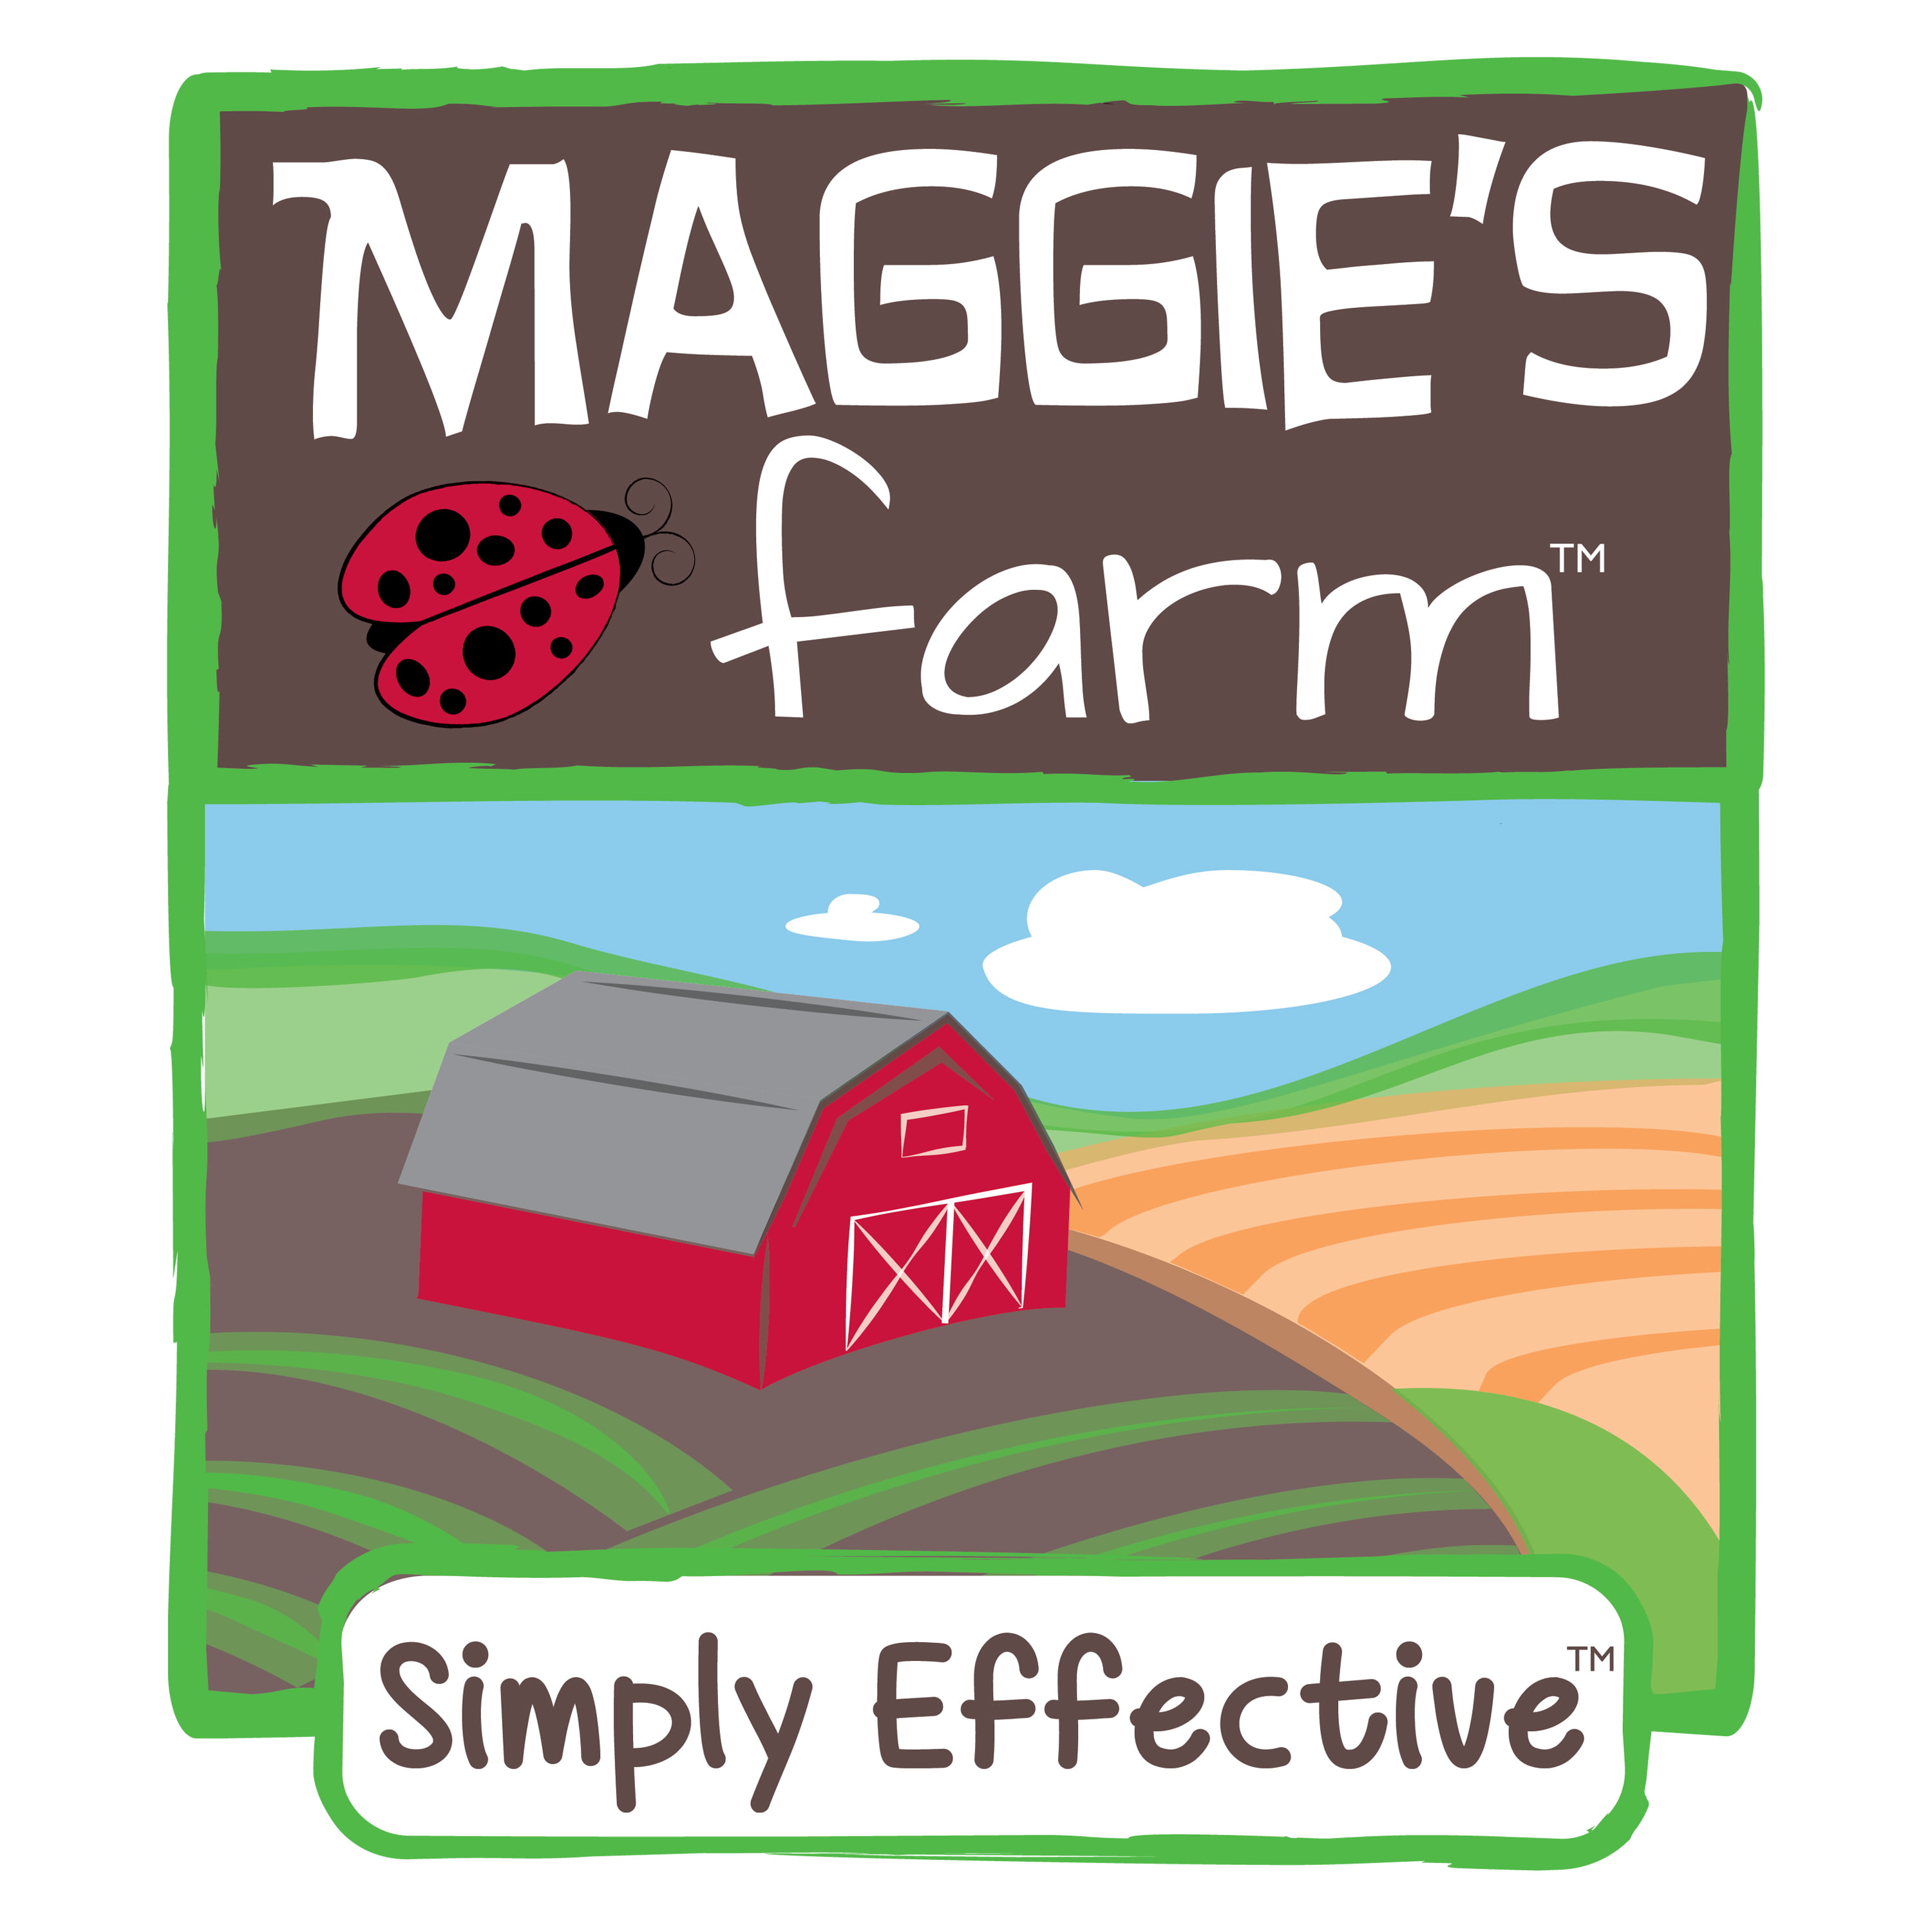 Maggie's Farm Simply Effective Roach Killer Gel Bait, 1-ounce 